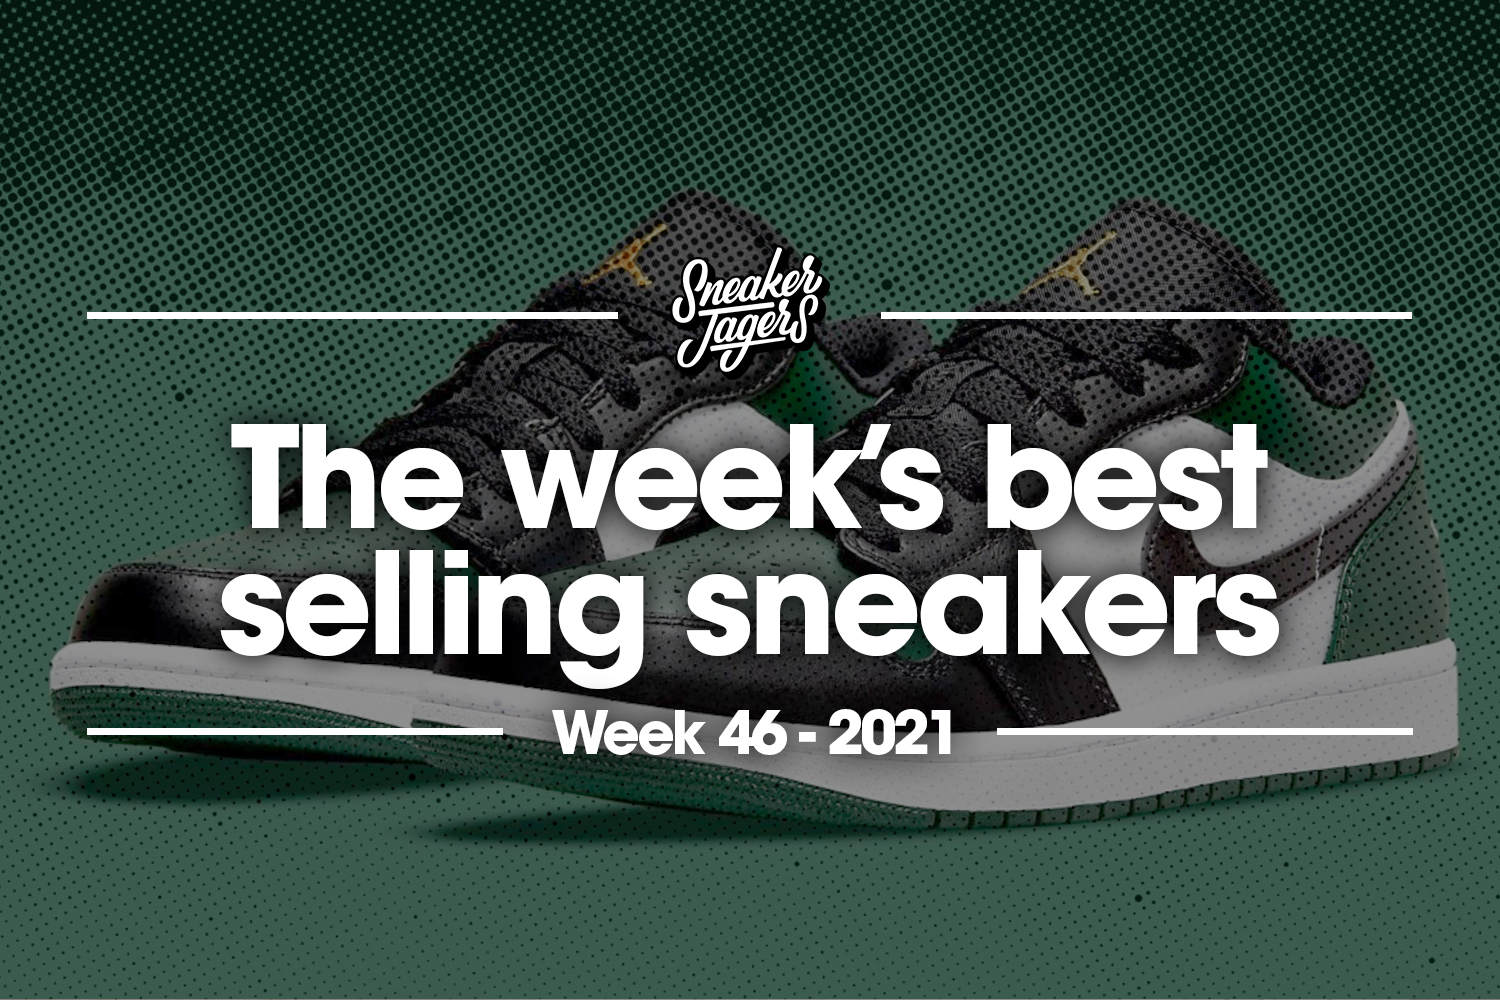 De 5 bestverkochte sneakers van week 46